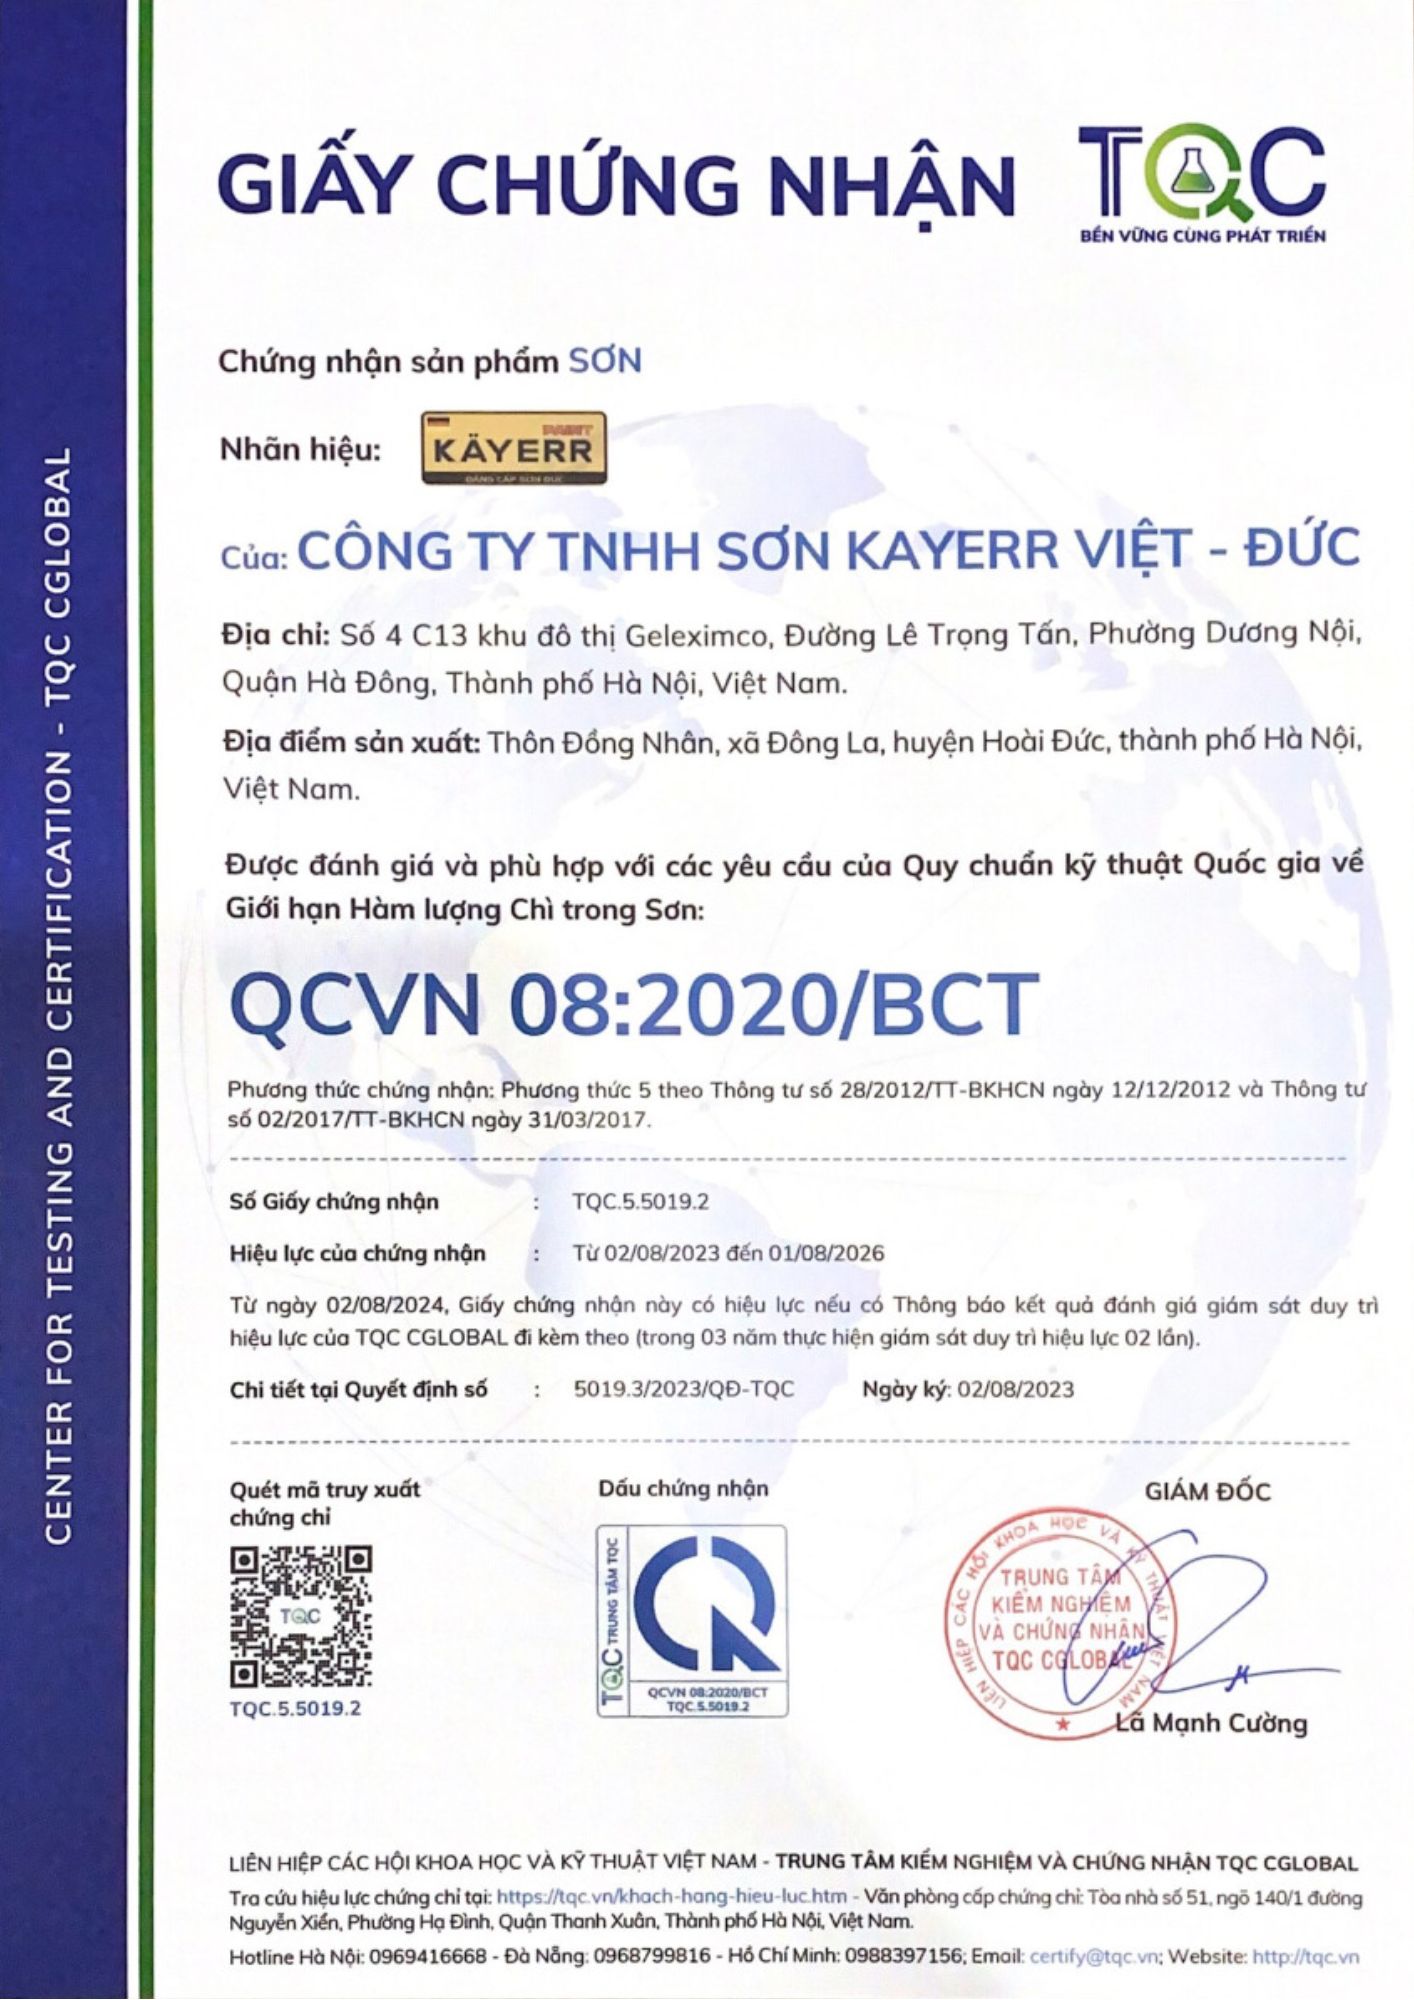 Chứng nhận hàm lượng chì: Công ty TNHH Sơn Kayerr Việt - Đức khẳng định chất lượng và  an toàn của sản phẩm sơn